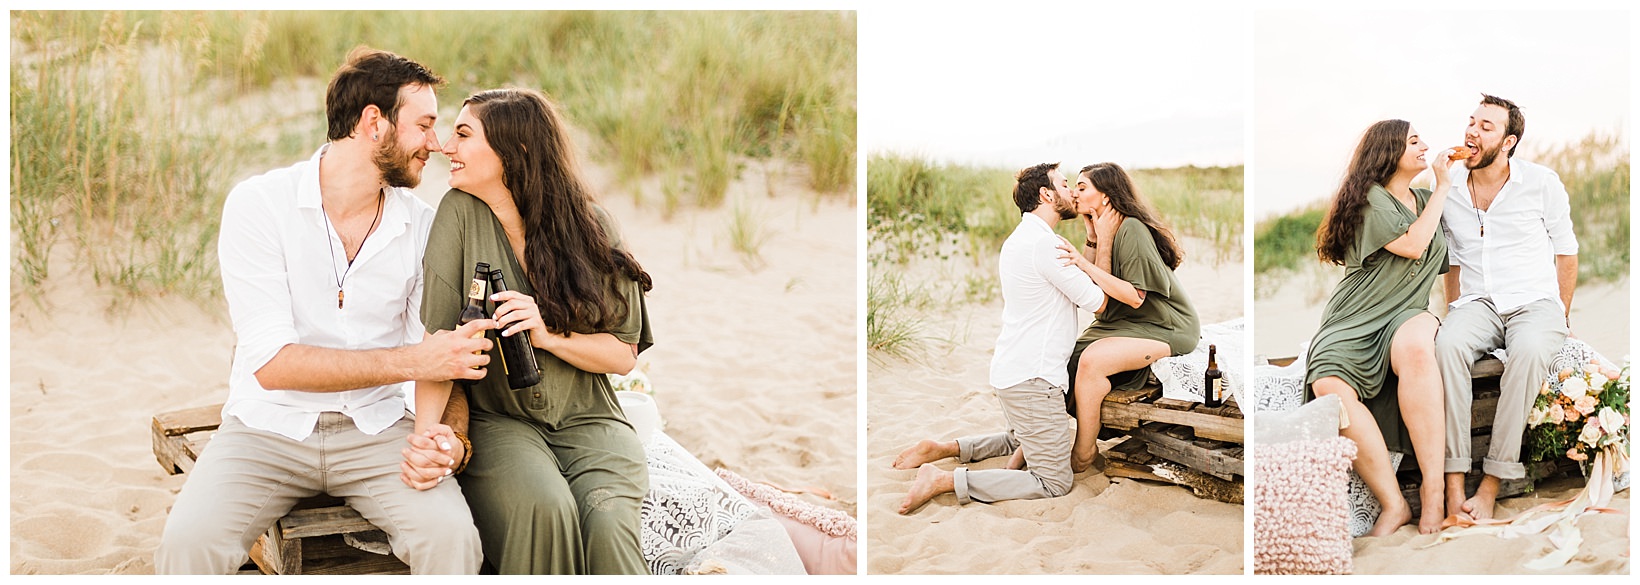 Virginia Beach musician elopement photographer couple inspiration boho green dress 